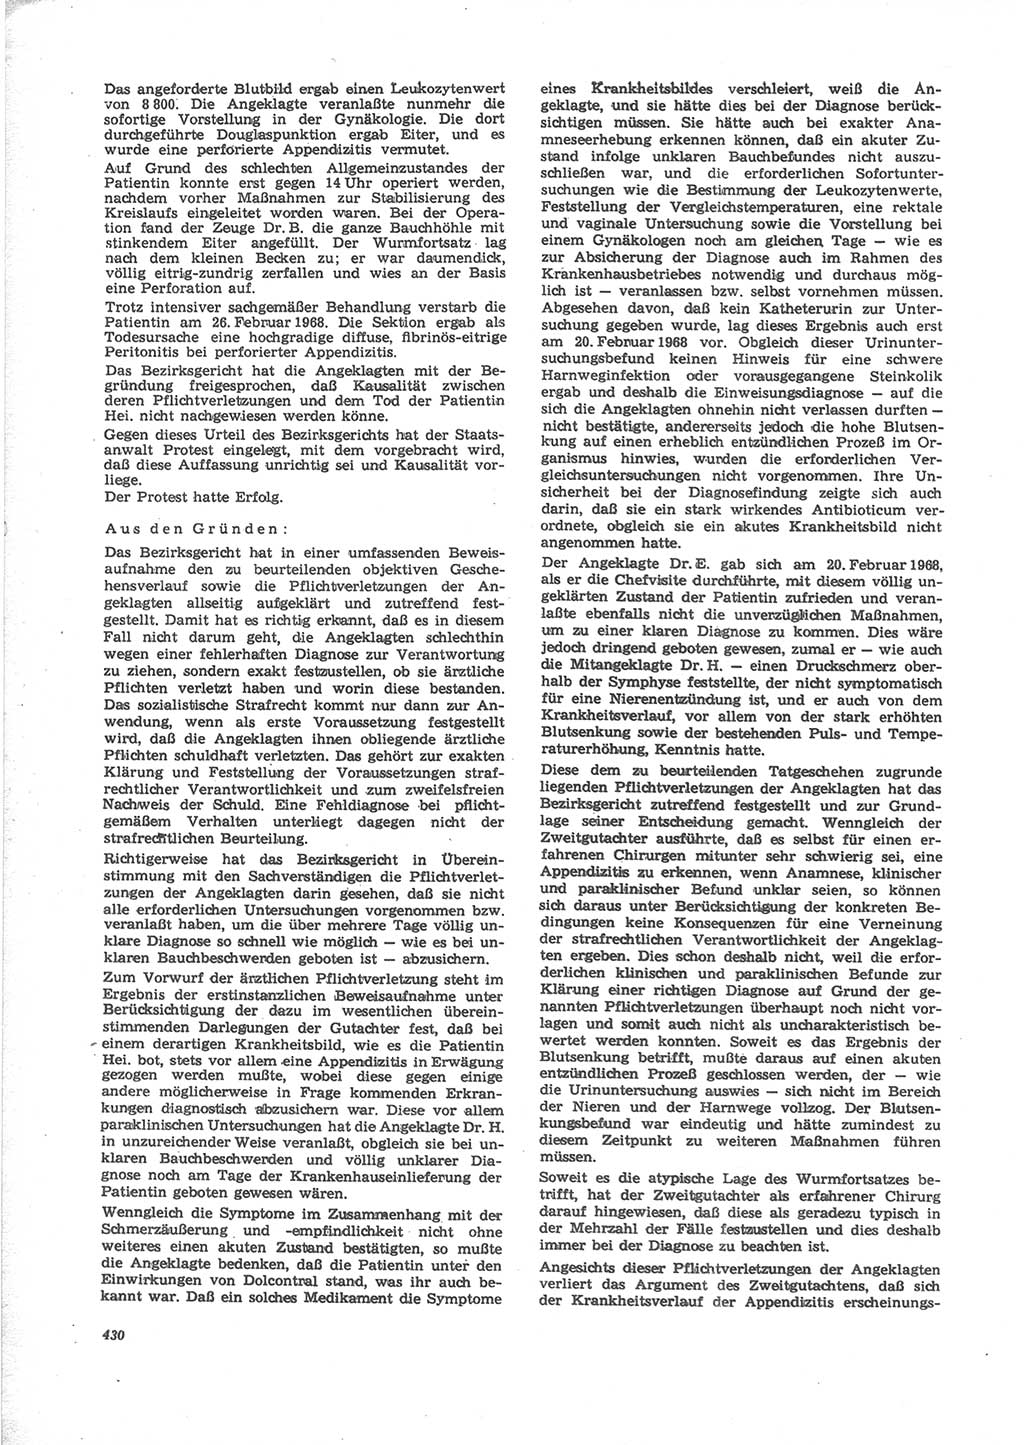 Neue Justiz (NJ), Zeitschrift für Recht und Rechtswissenschaft [Deutsche Demokratische Republik (DDR)], 24. Jahrgang 1970, Seite 430 (NJ DDR 1970, S. 430)